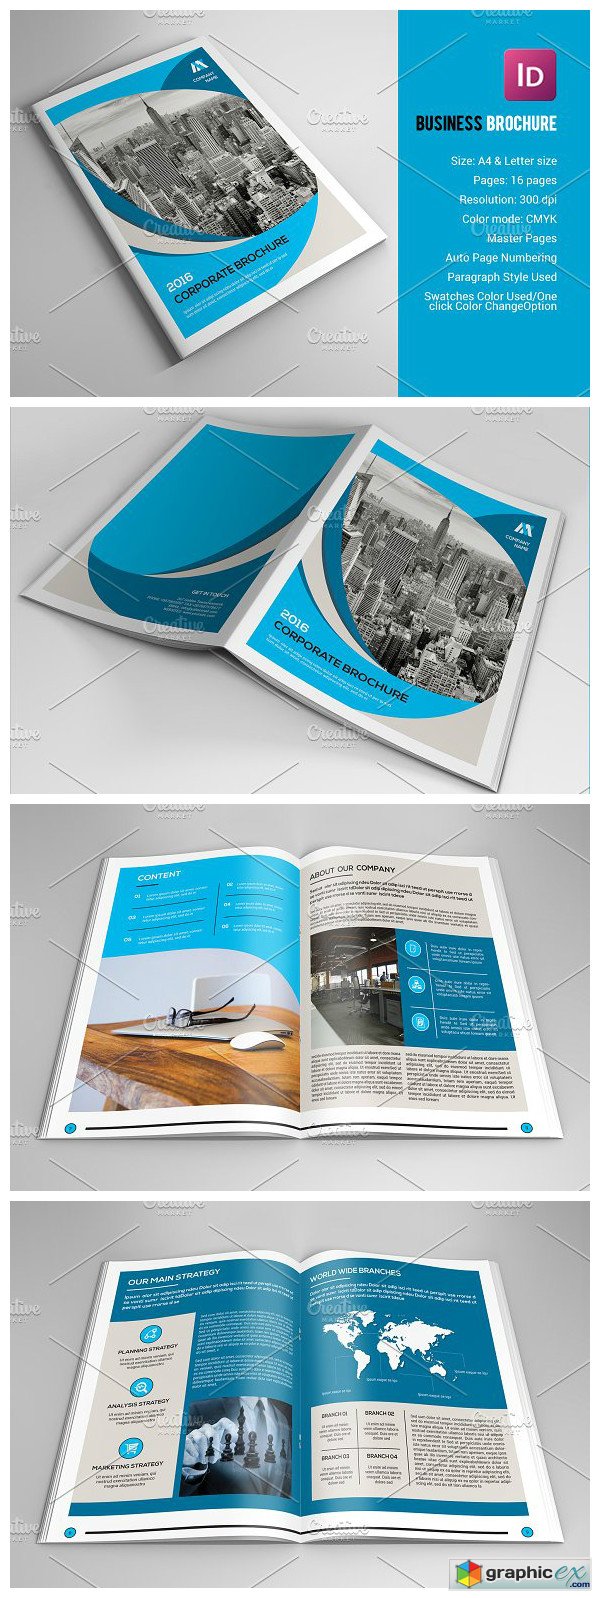 InDesign Business Brochure-V534